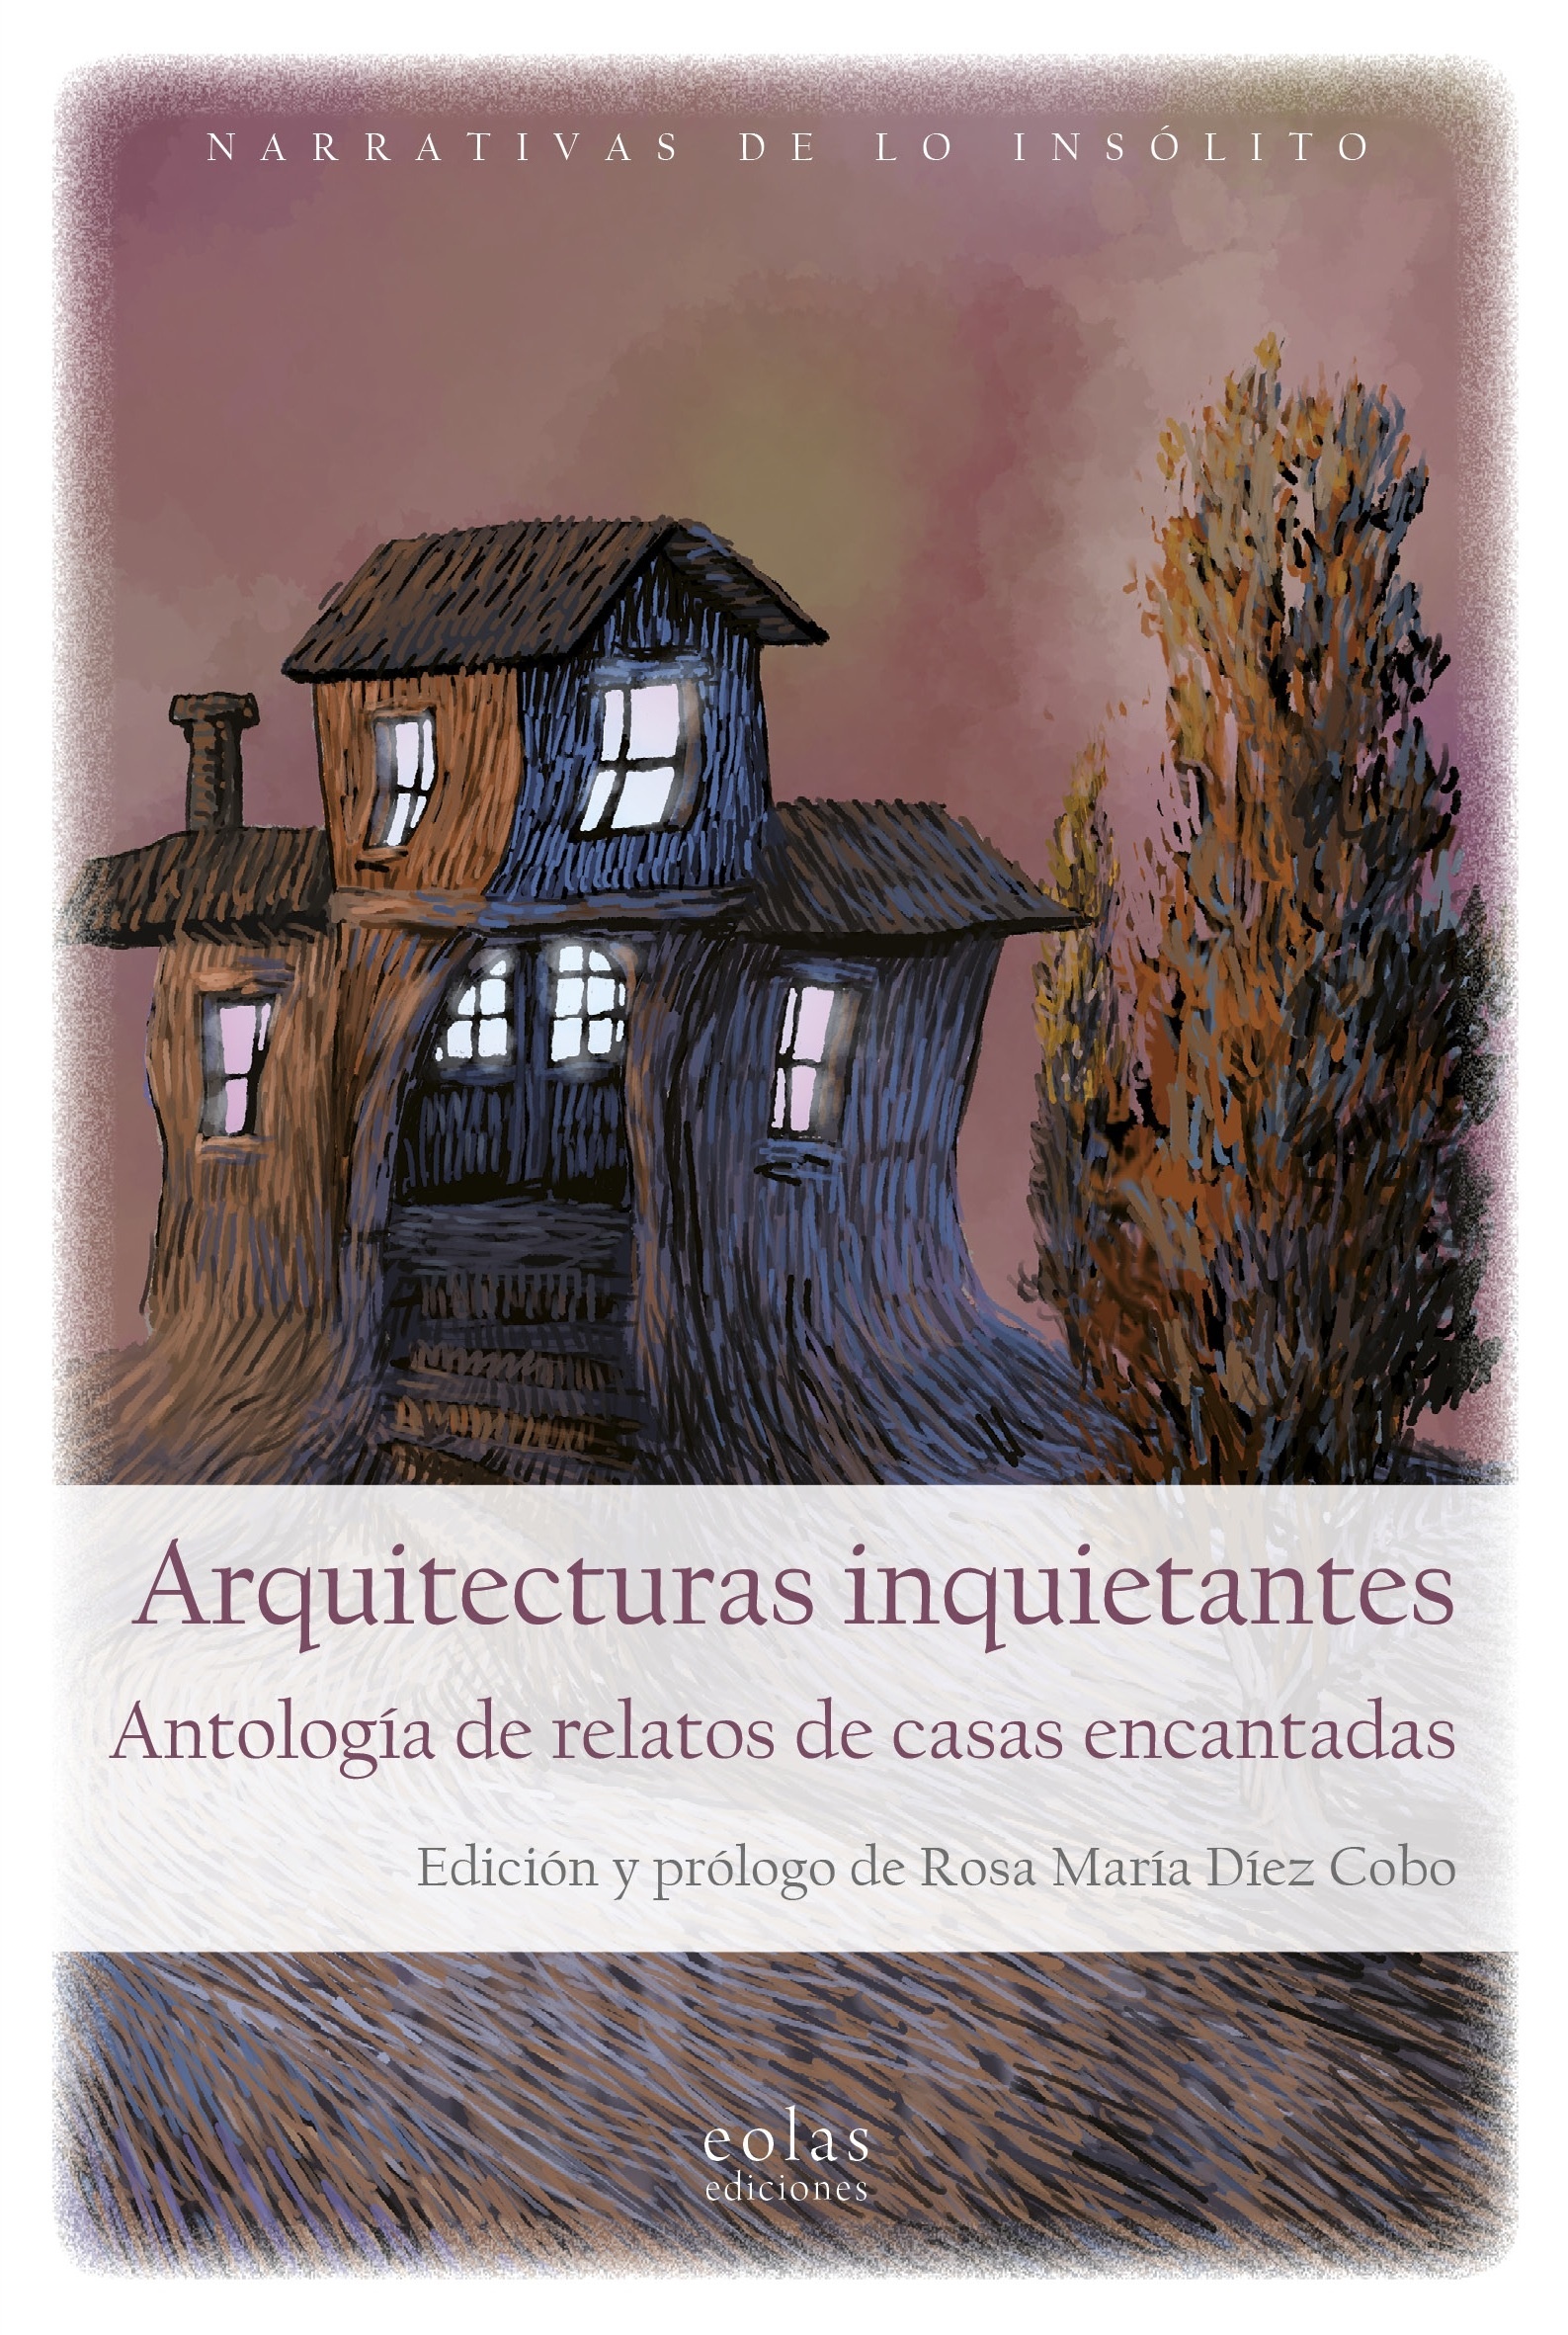 Arquitecturas inquietantes "Antología de relatos de casas encantadas"